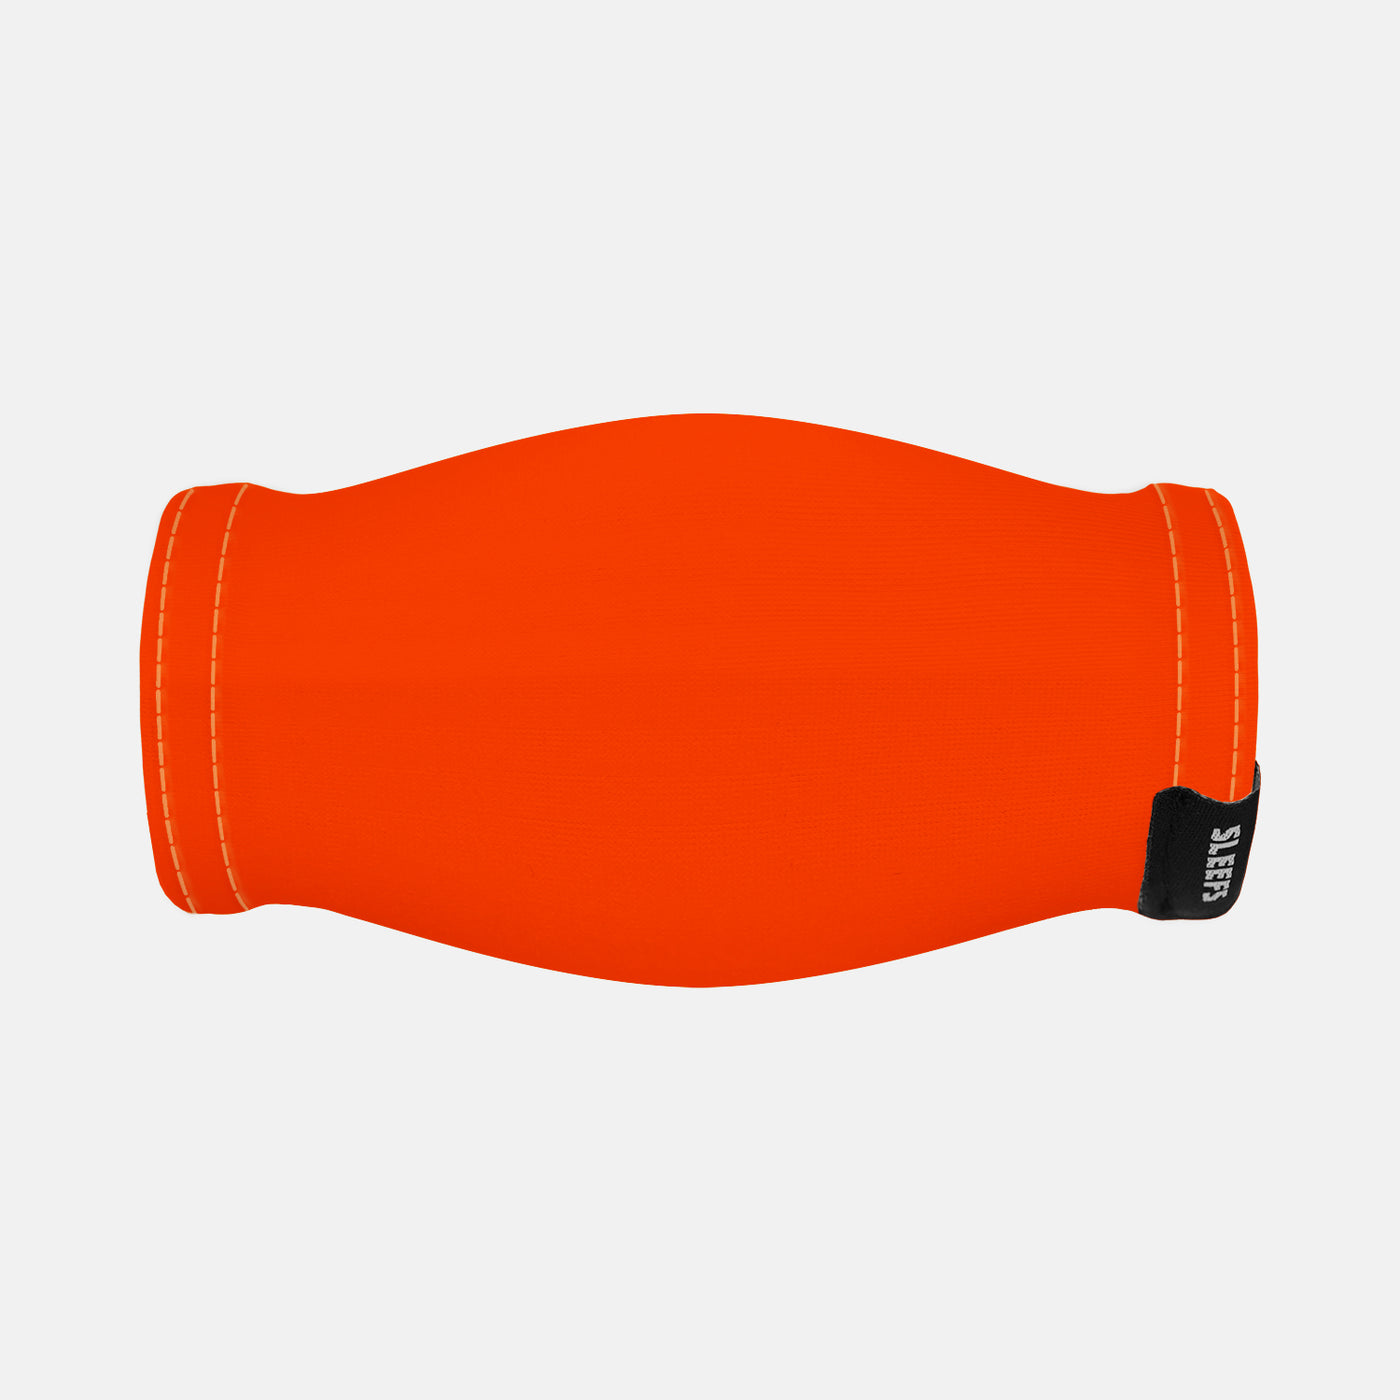 Hue Orange Chin Strap Cover